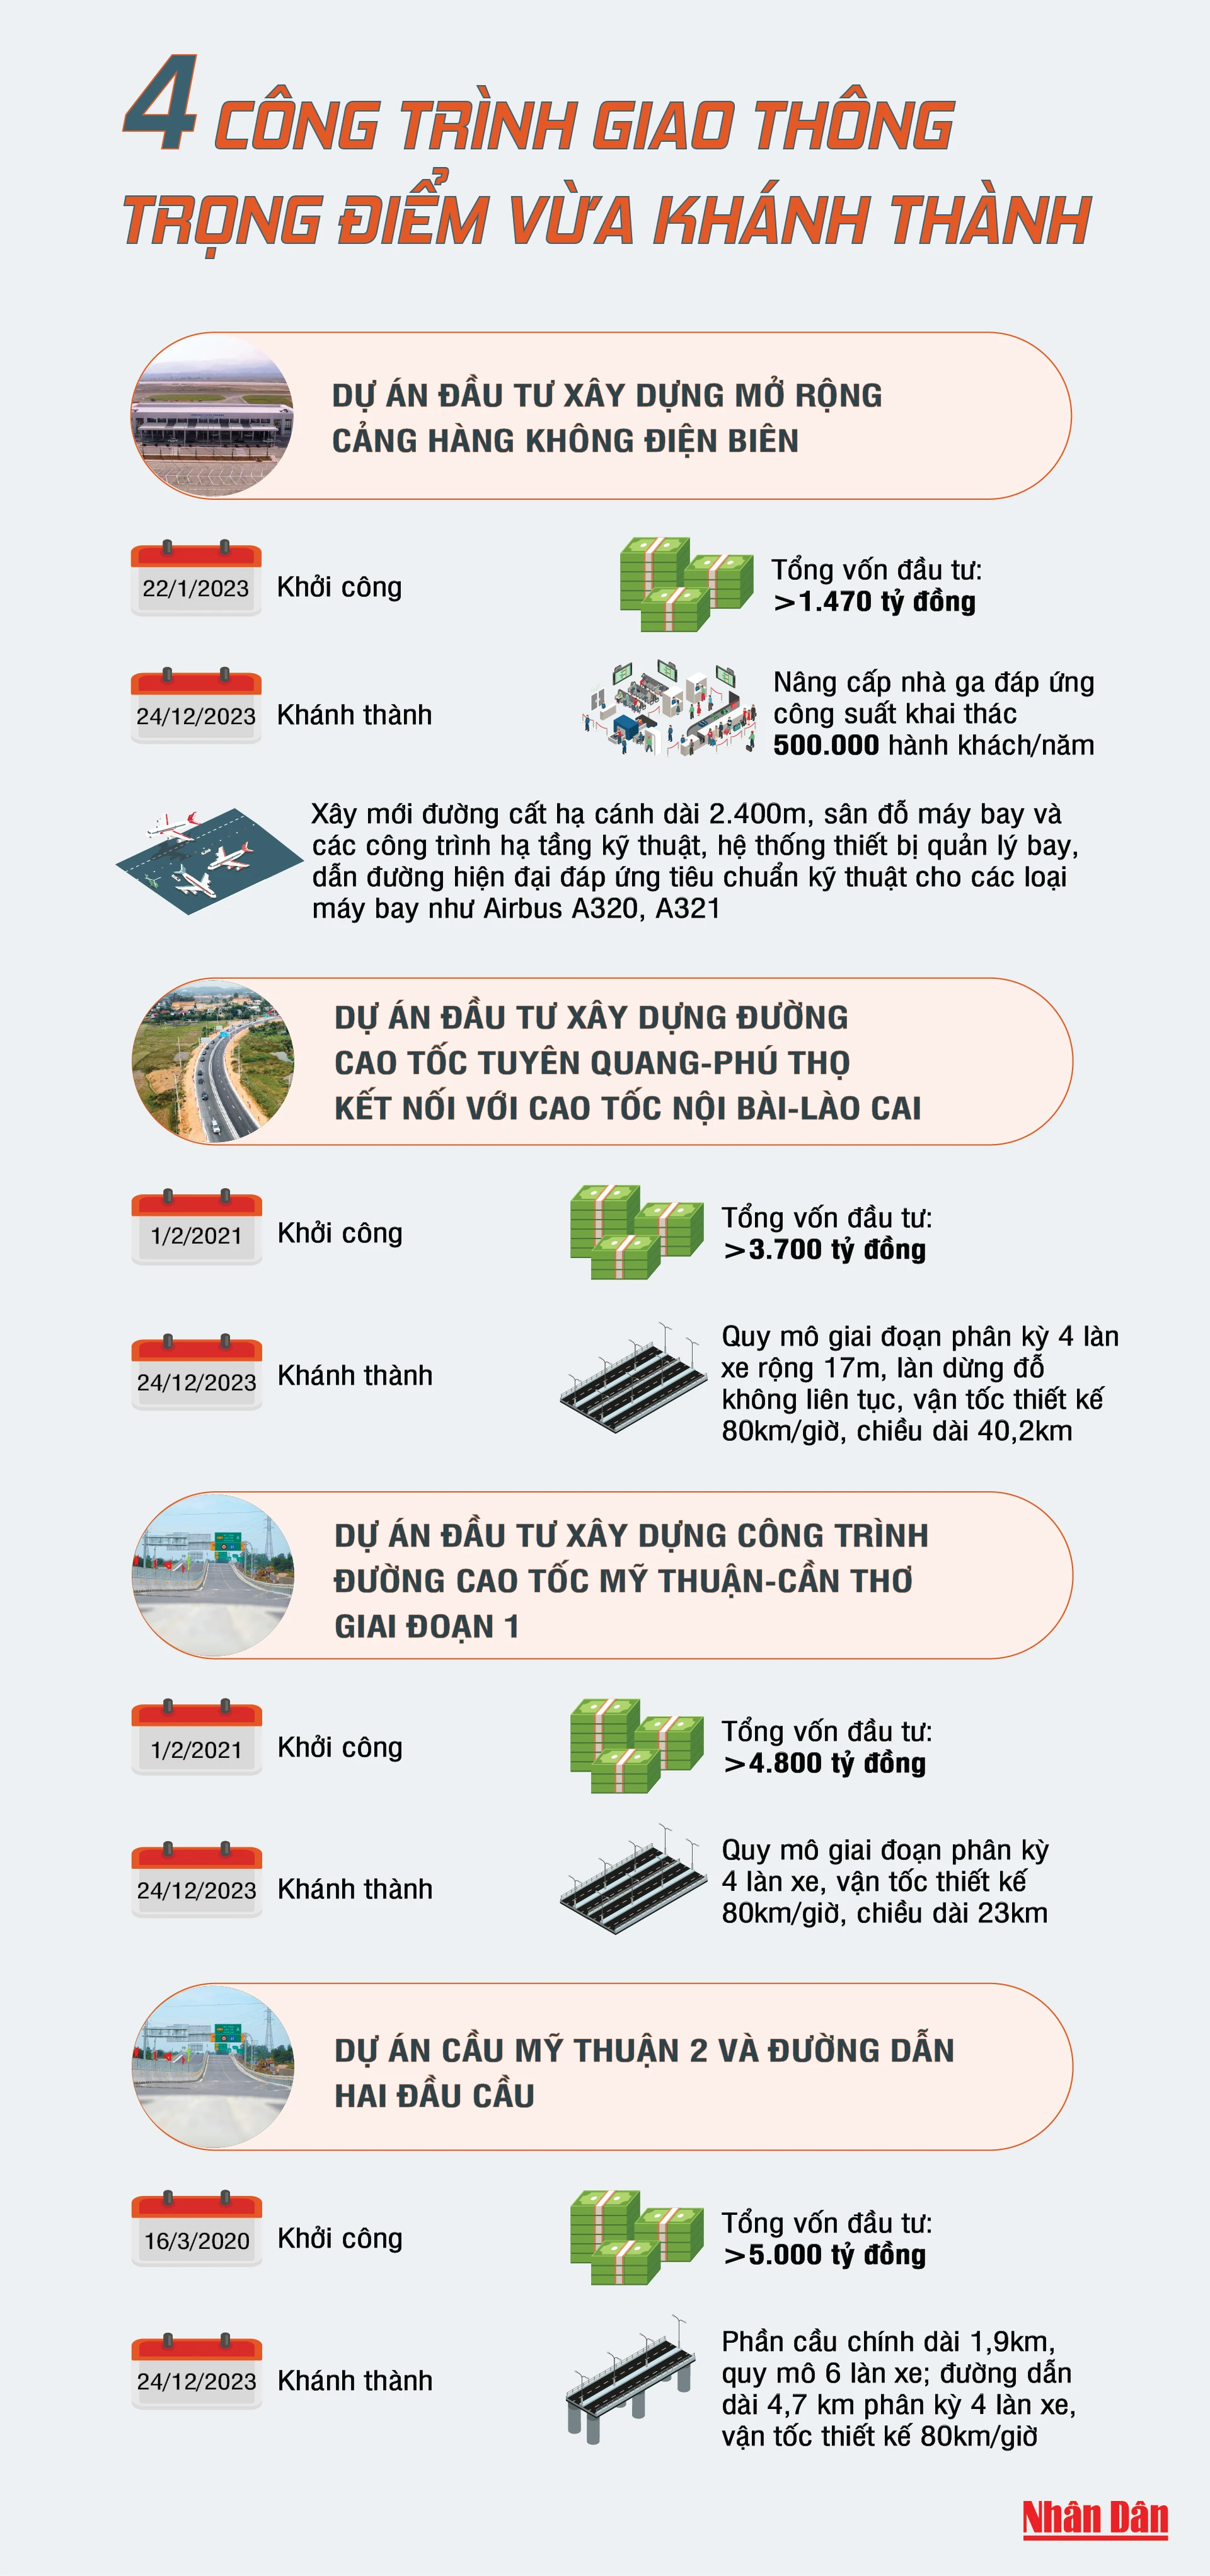 [Infographic] 4 công trình giao thông trọng điểm vừa khánh thành ảnh 1